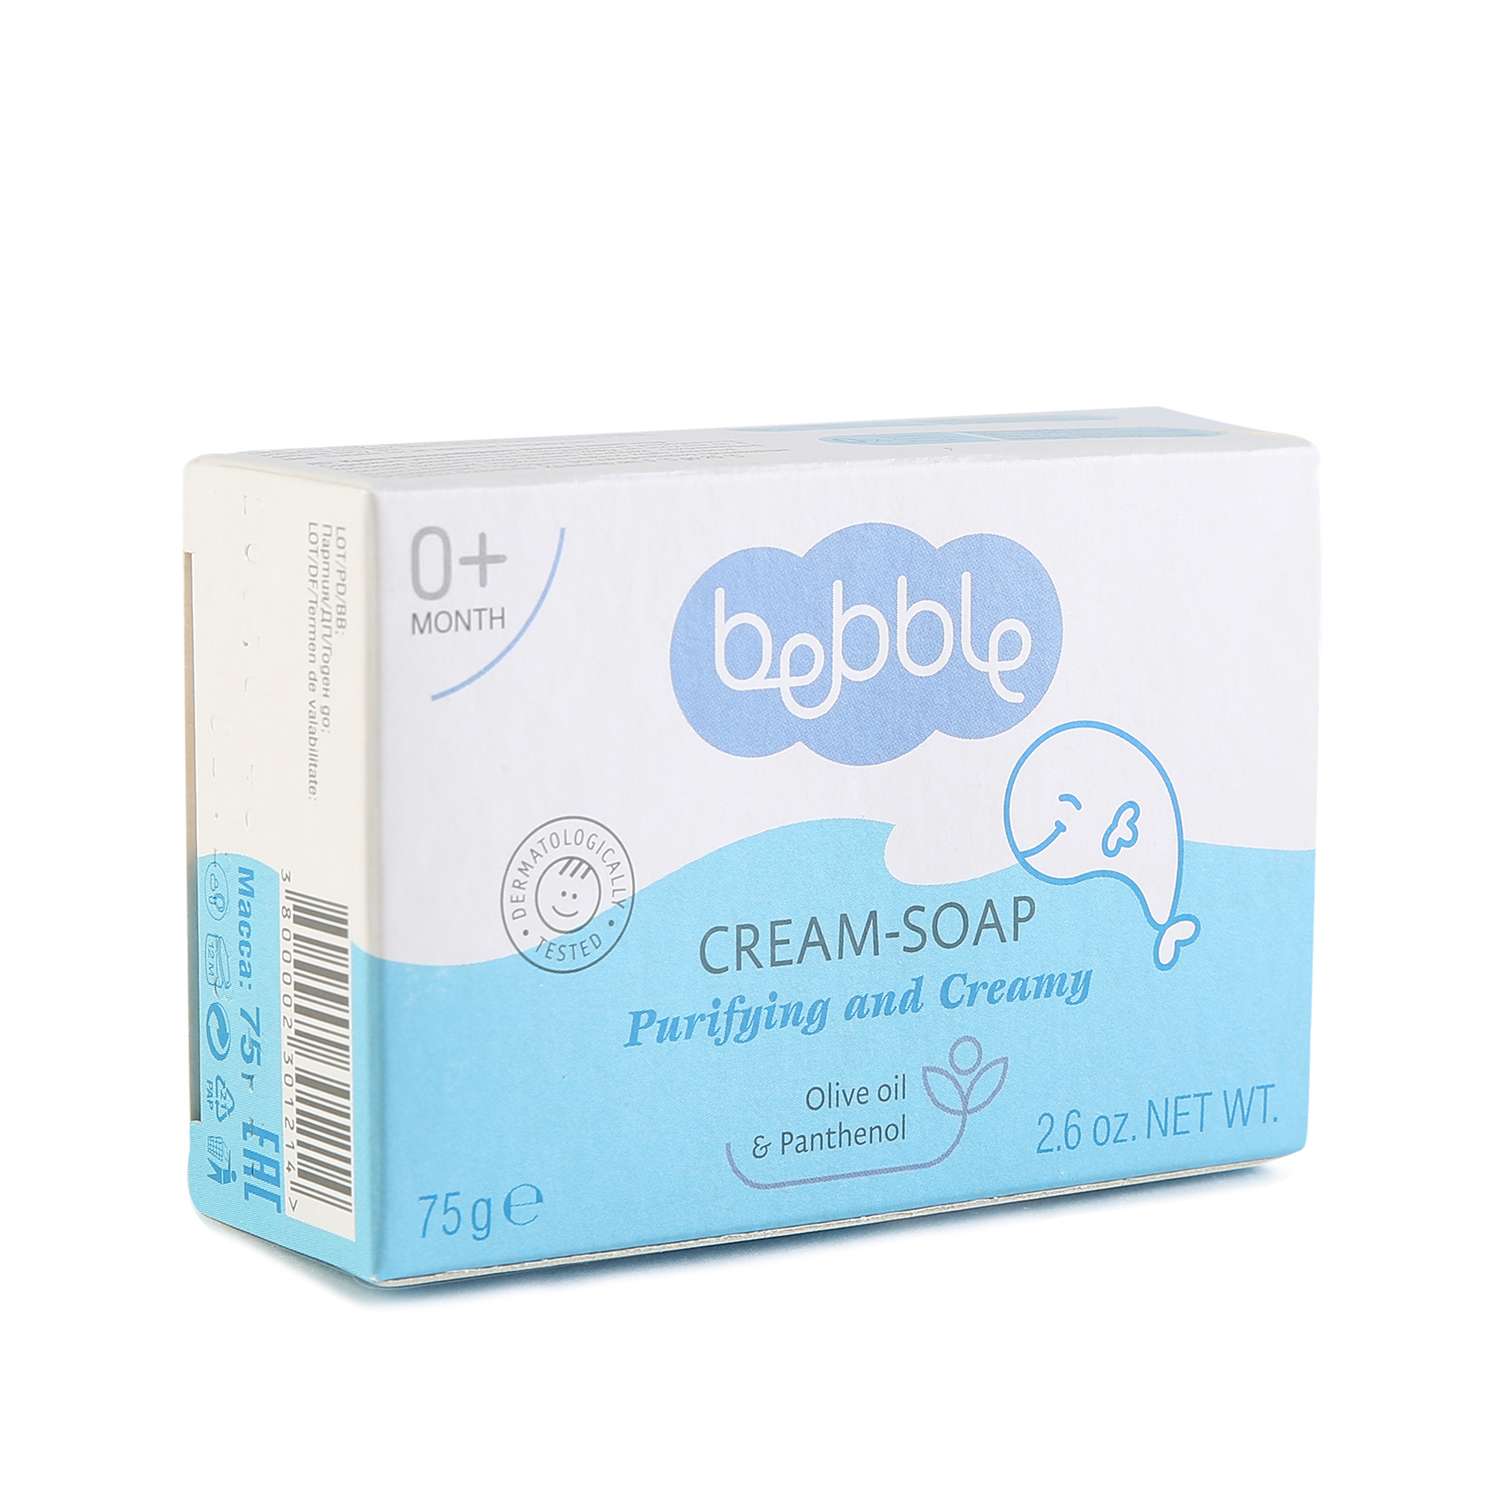 Крем-мыло Bebble Cream-Soap - фото 4